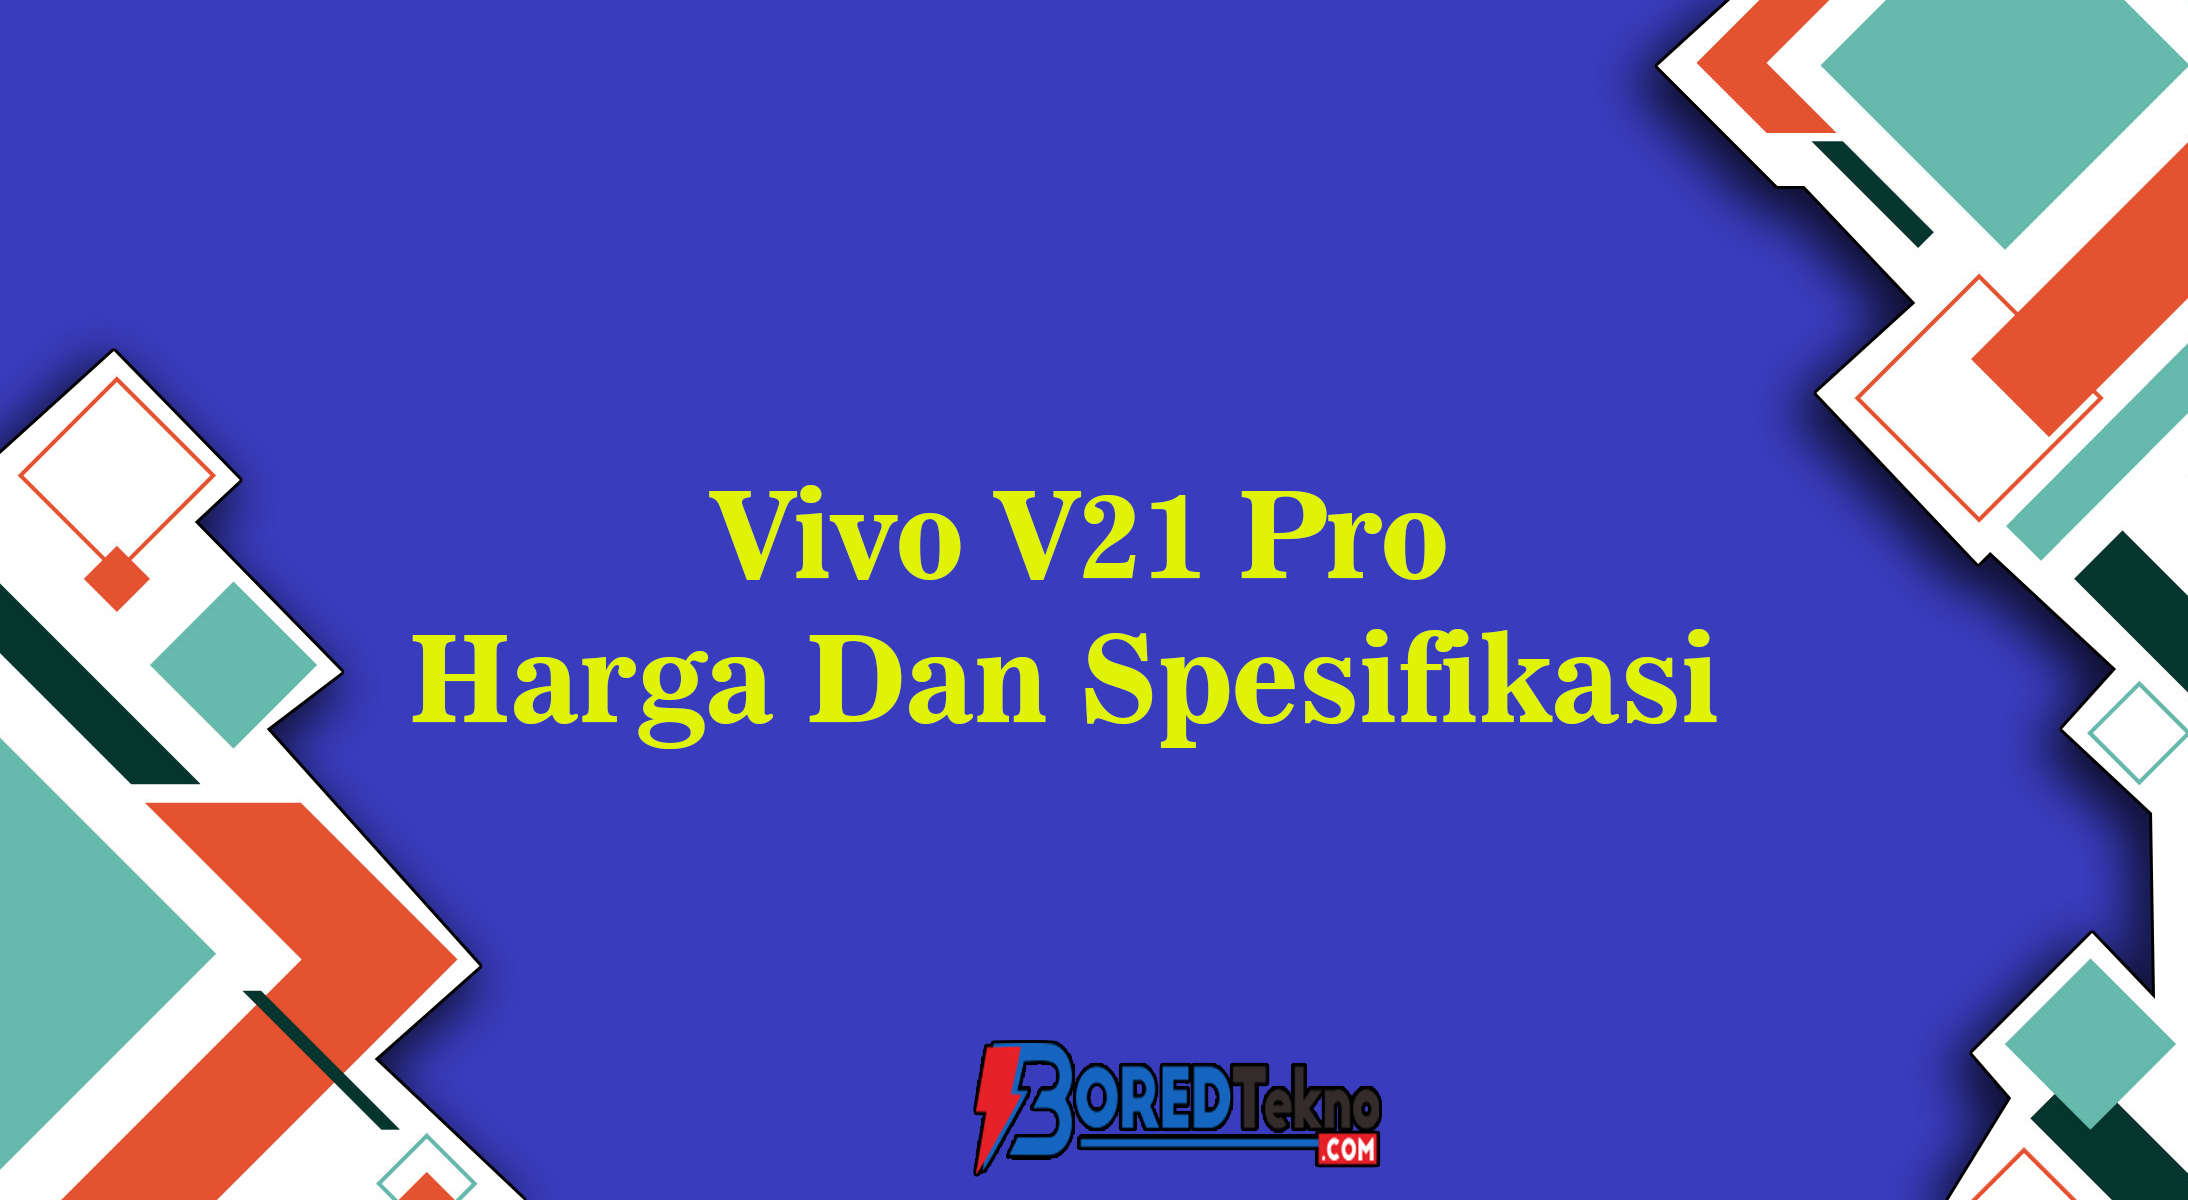 Vivo V21 Pro Harga Dan Spesifikasi